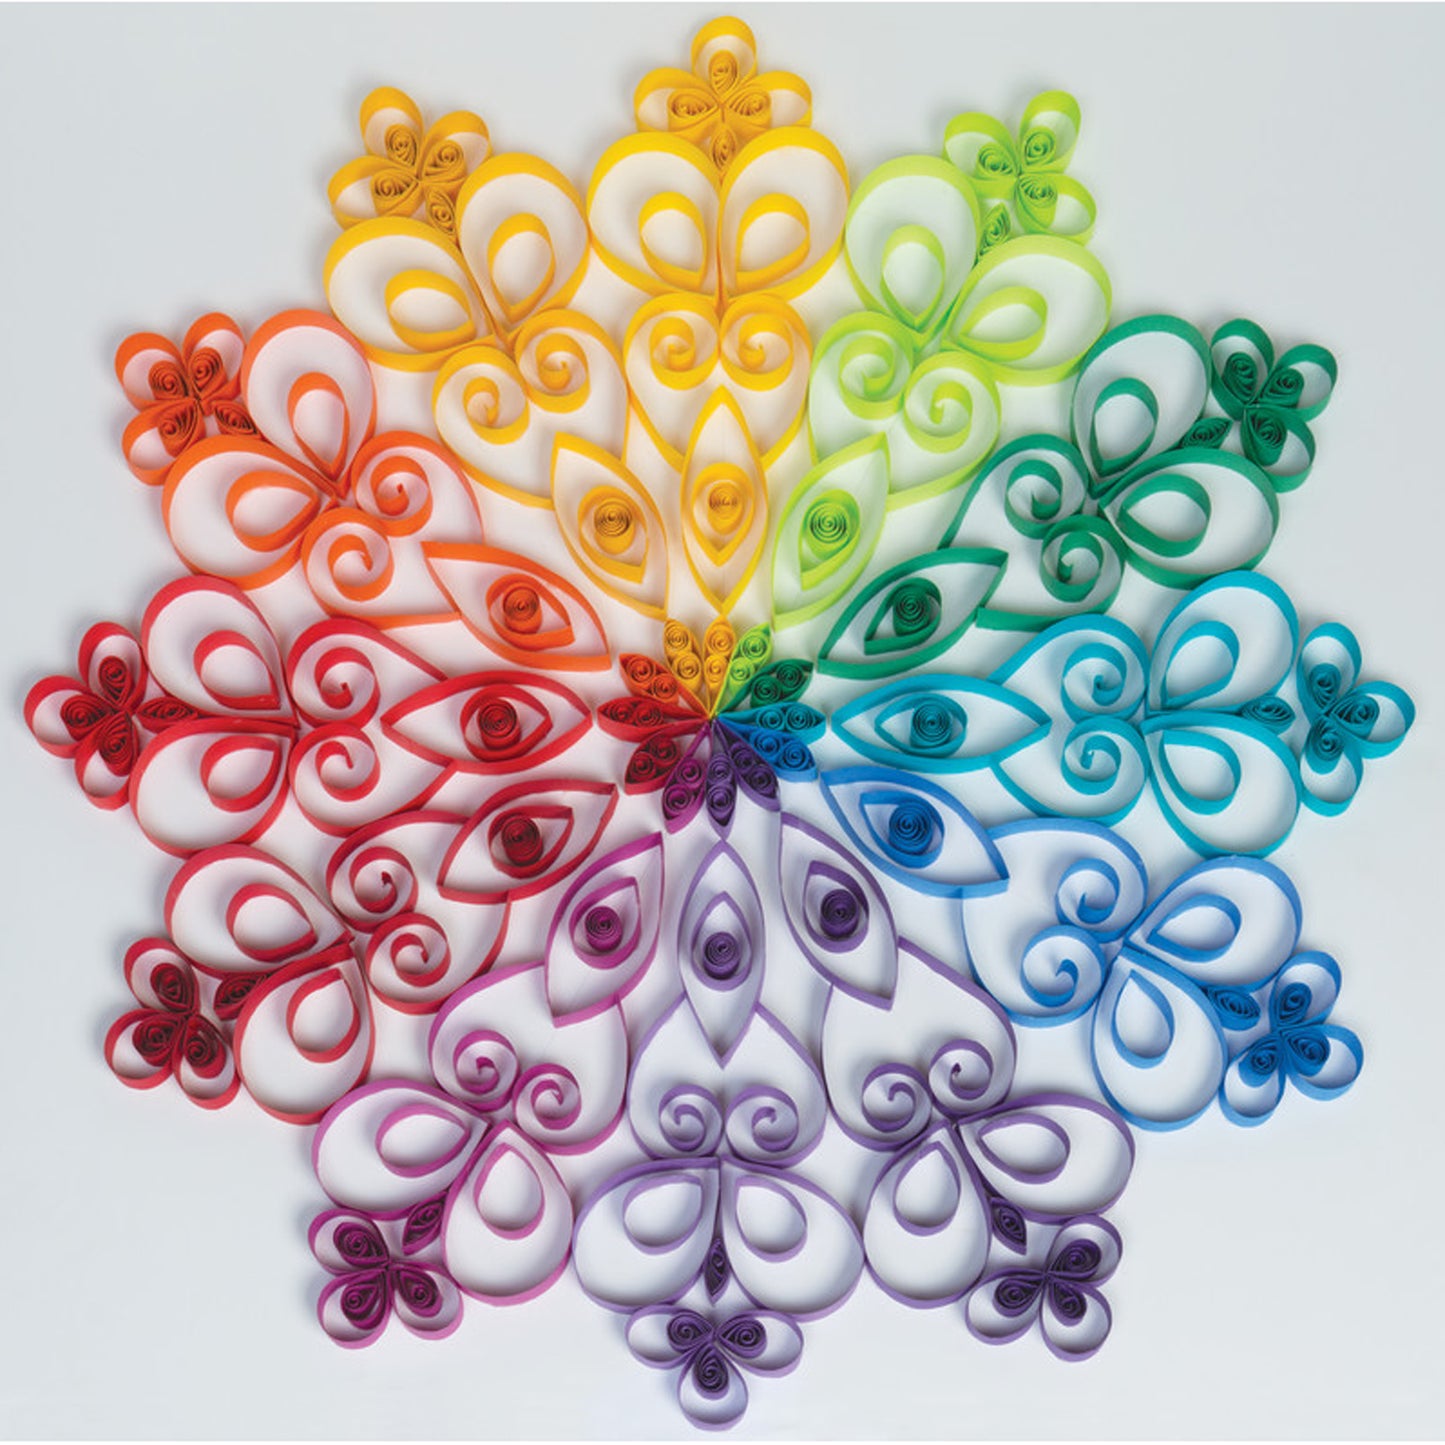 Color Wheel Assortment, 12 Vibrant Colors, 12" x 18", 72 Sheets Per Pack, 3 Packs